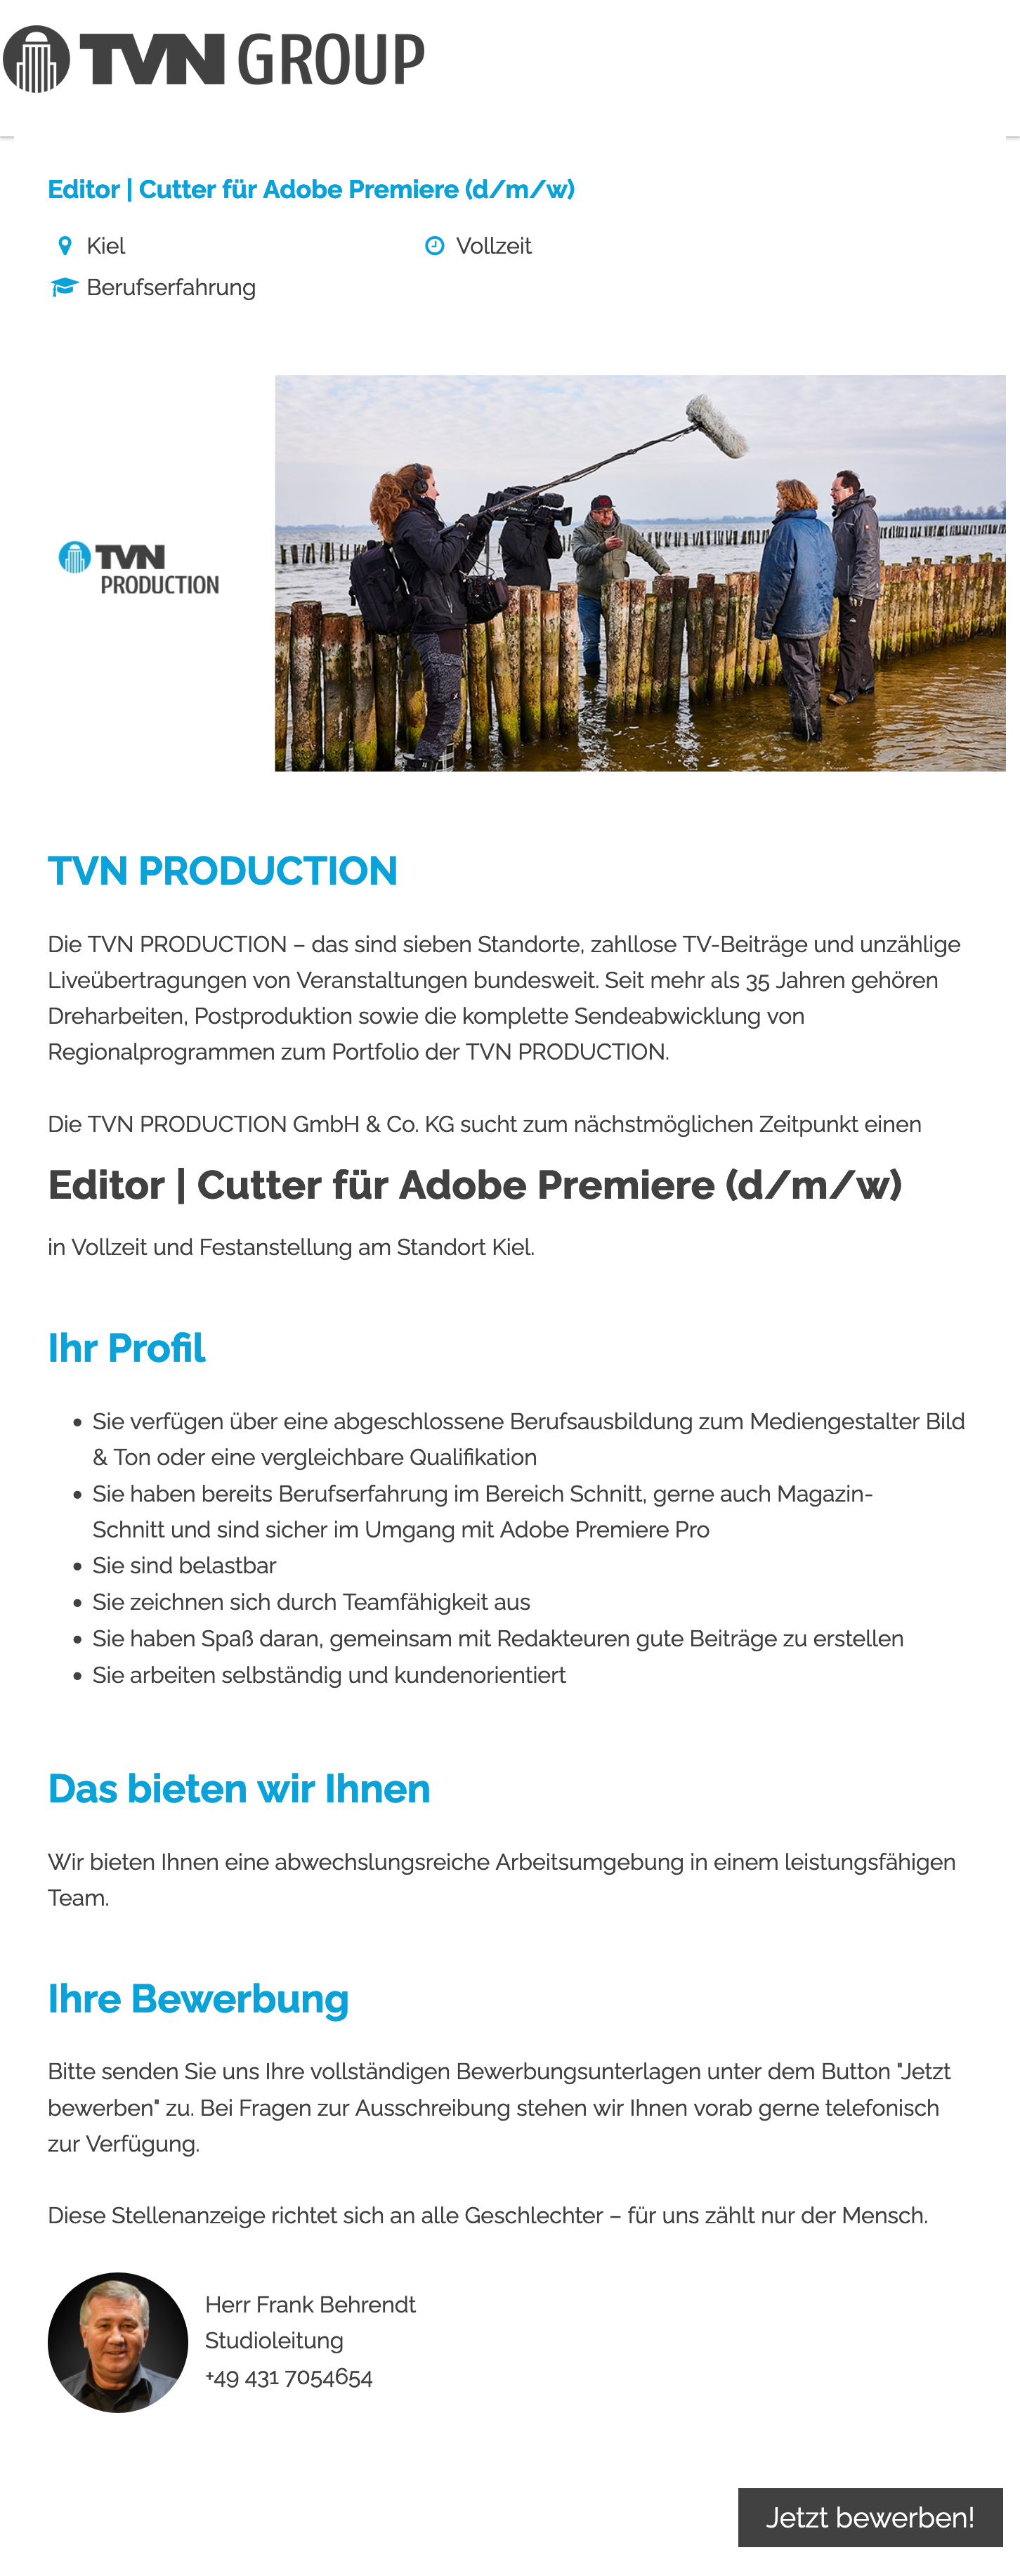 Editor / Cutter für Adobe Premiere (d/m/w)